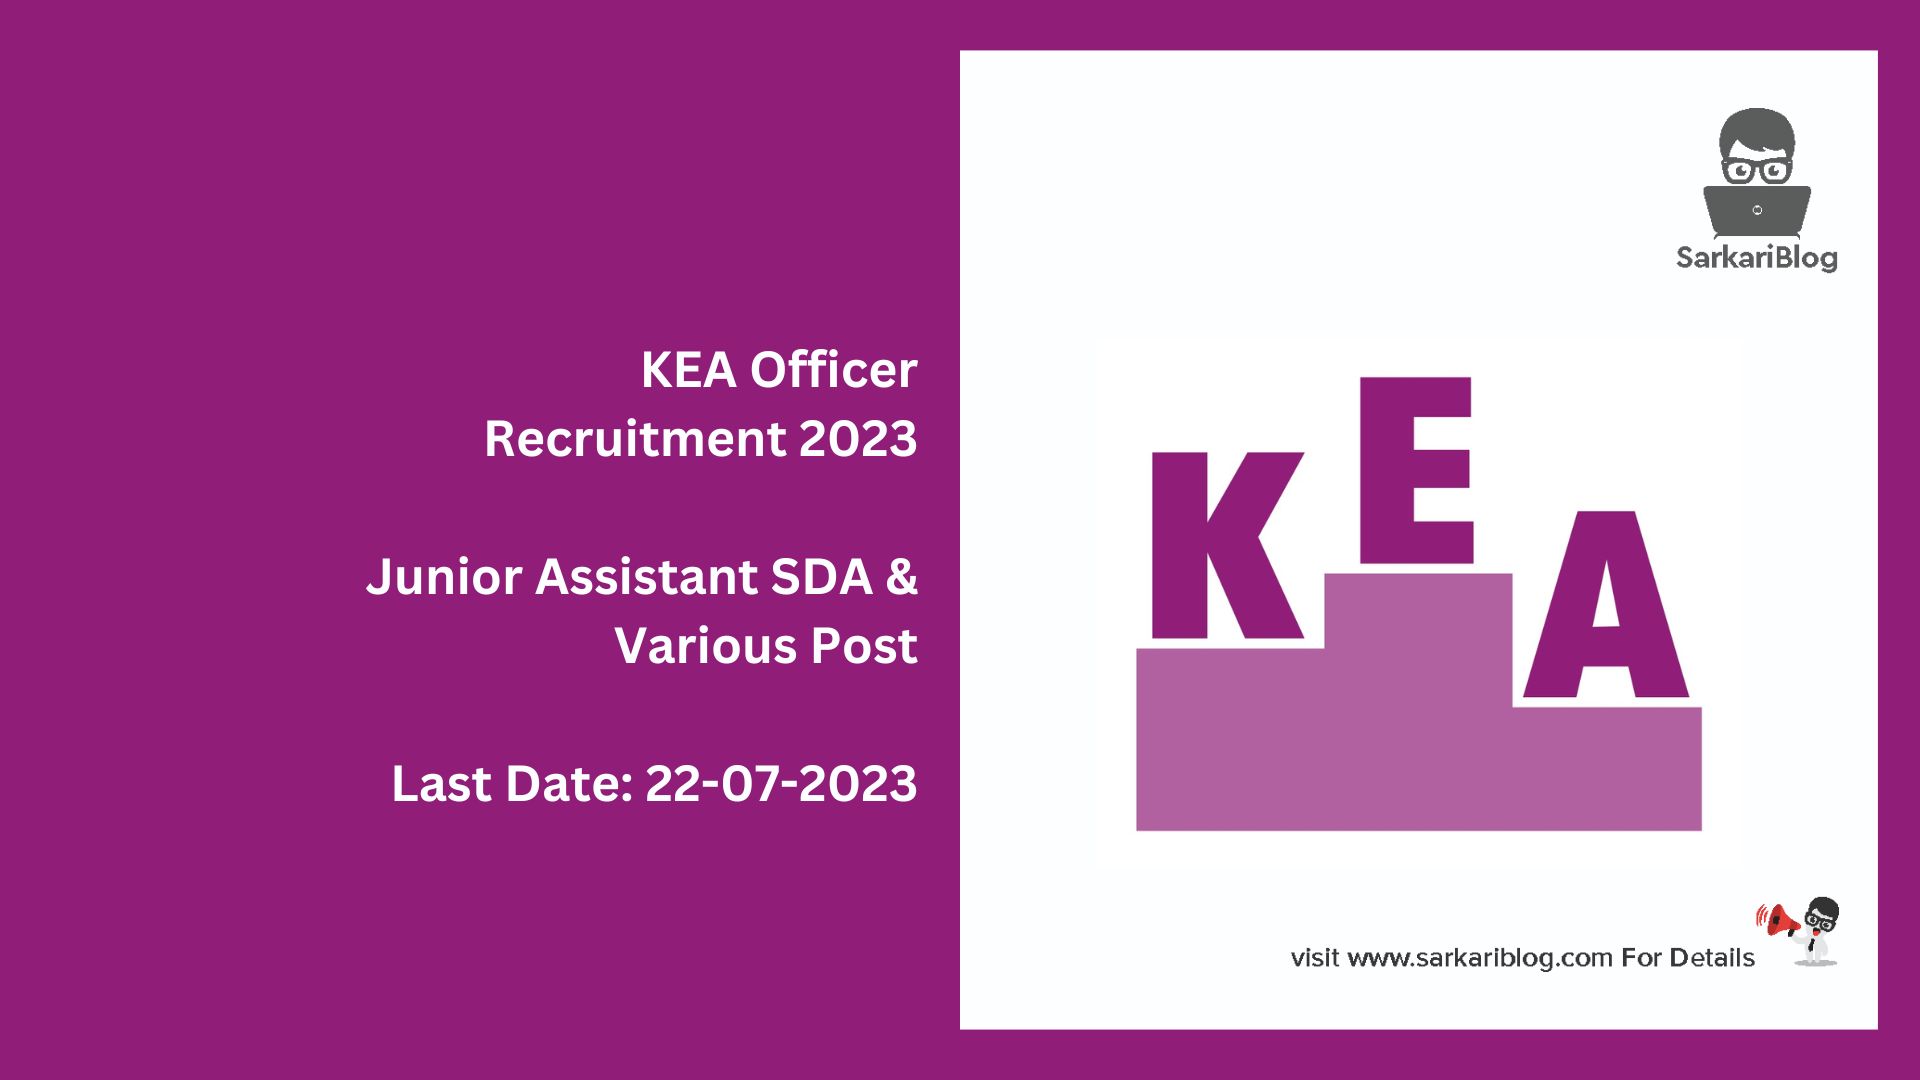 KEA Officer Recruitment 2023